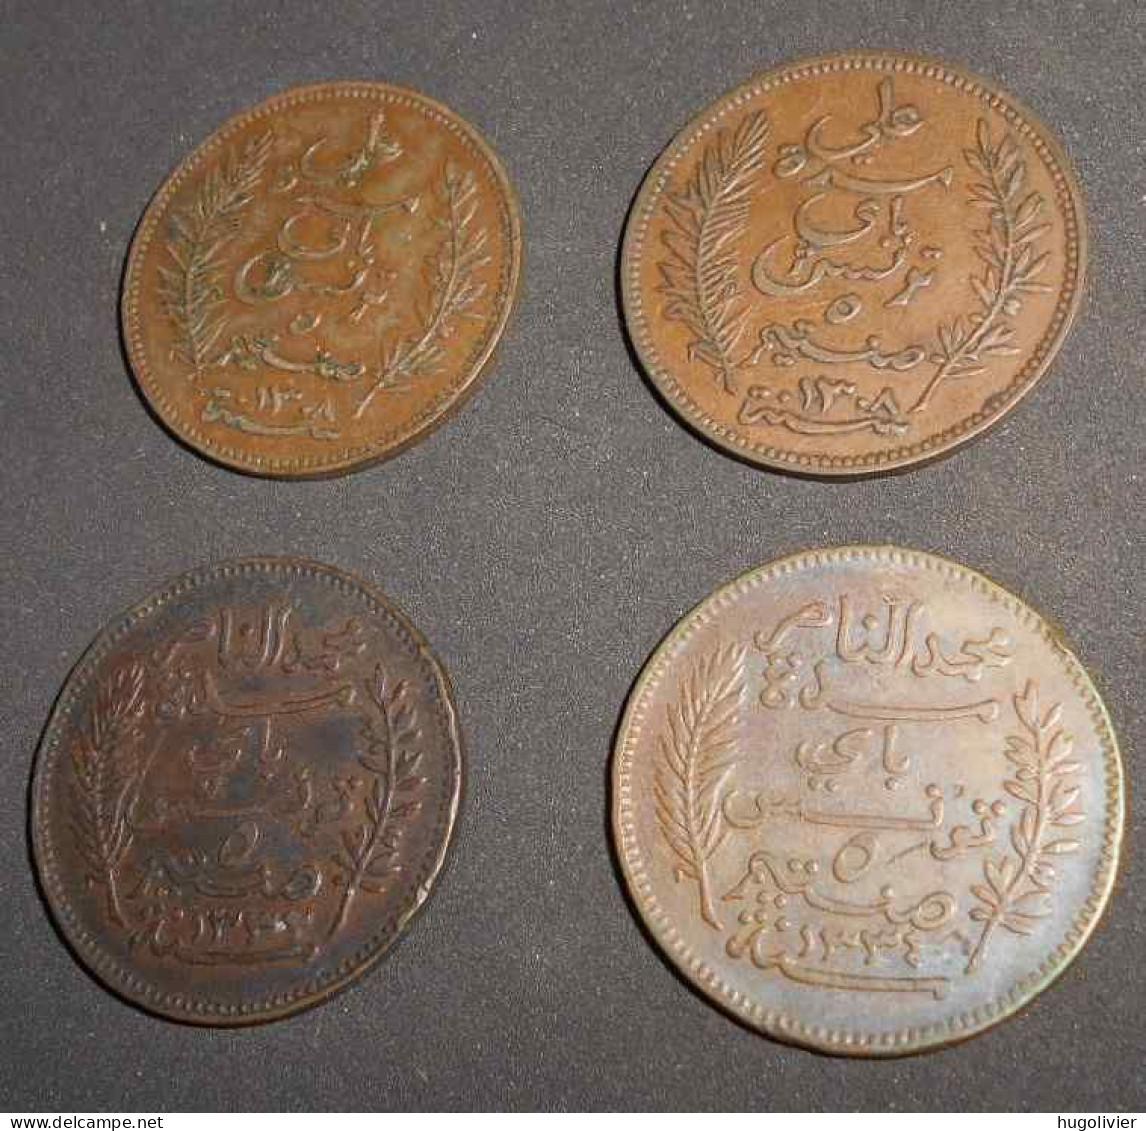 Lot De 4 X 5 Centimes Tunisie Protectorat Français 1914 Et 1916 (Al Nasir) 1891 (2 X Ali Bey) - Tunisia